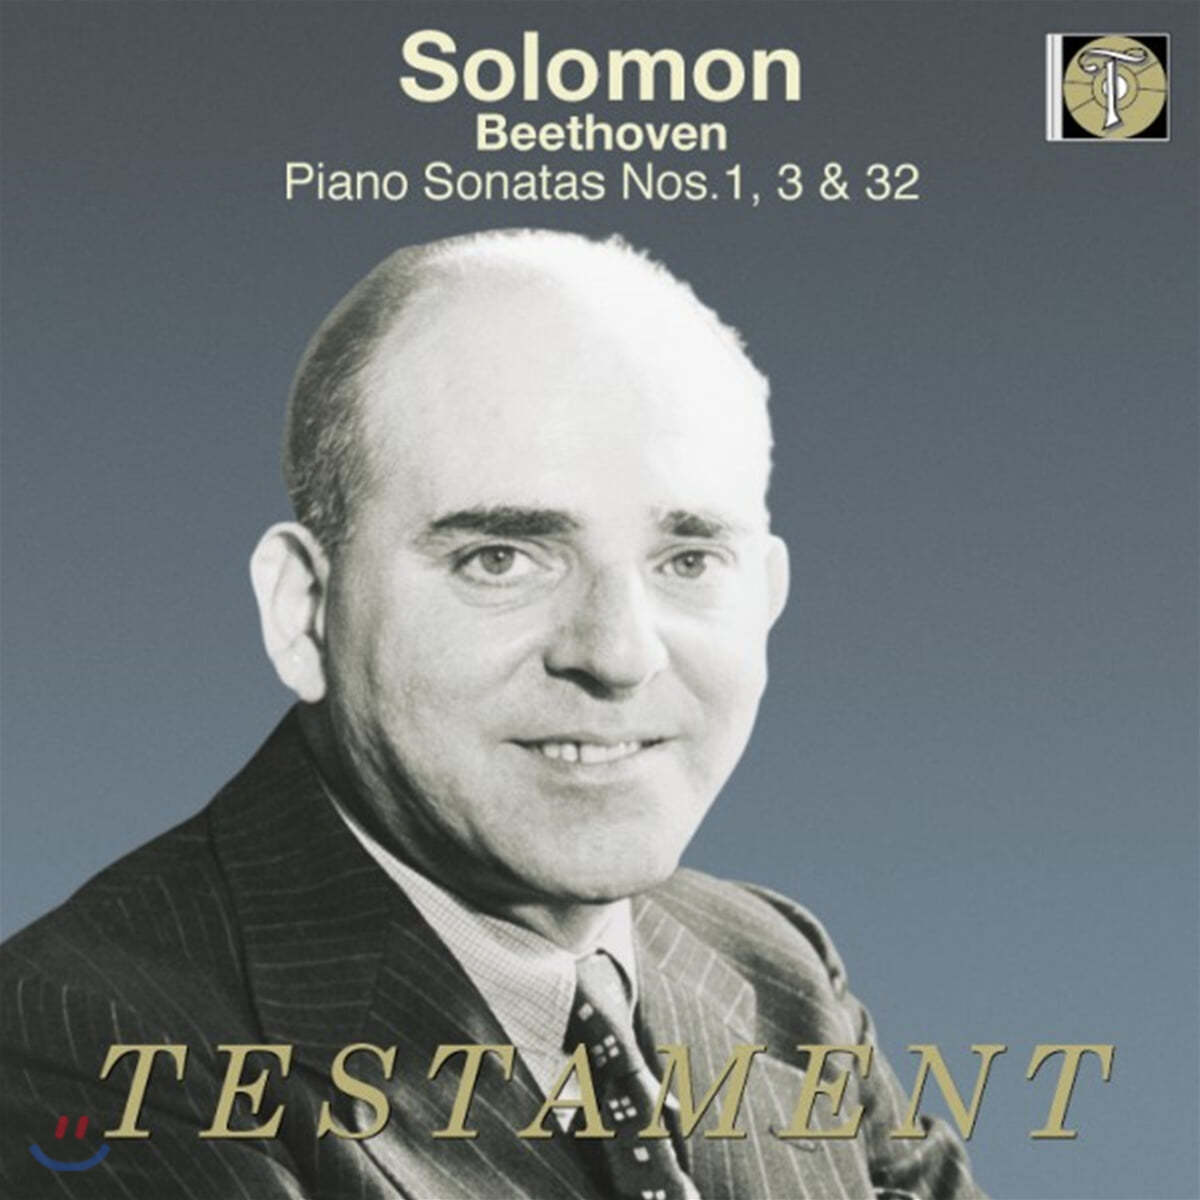 Solomon 베토벤: 피아노 소나타 1번, 3번, 32번 - 솔로몬 (Beethoven: Piano Sonatas Op.2/1, Op.2/3, Op.111)